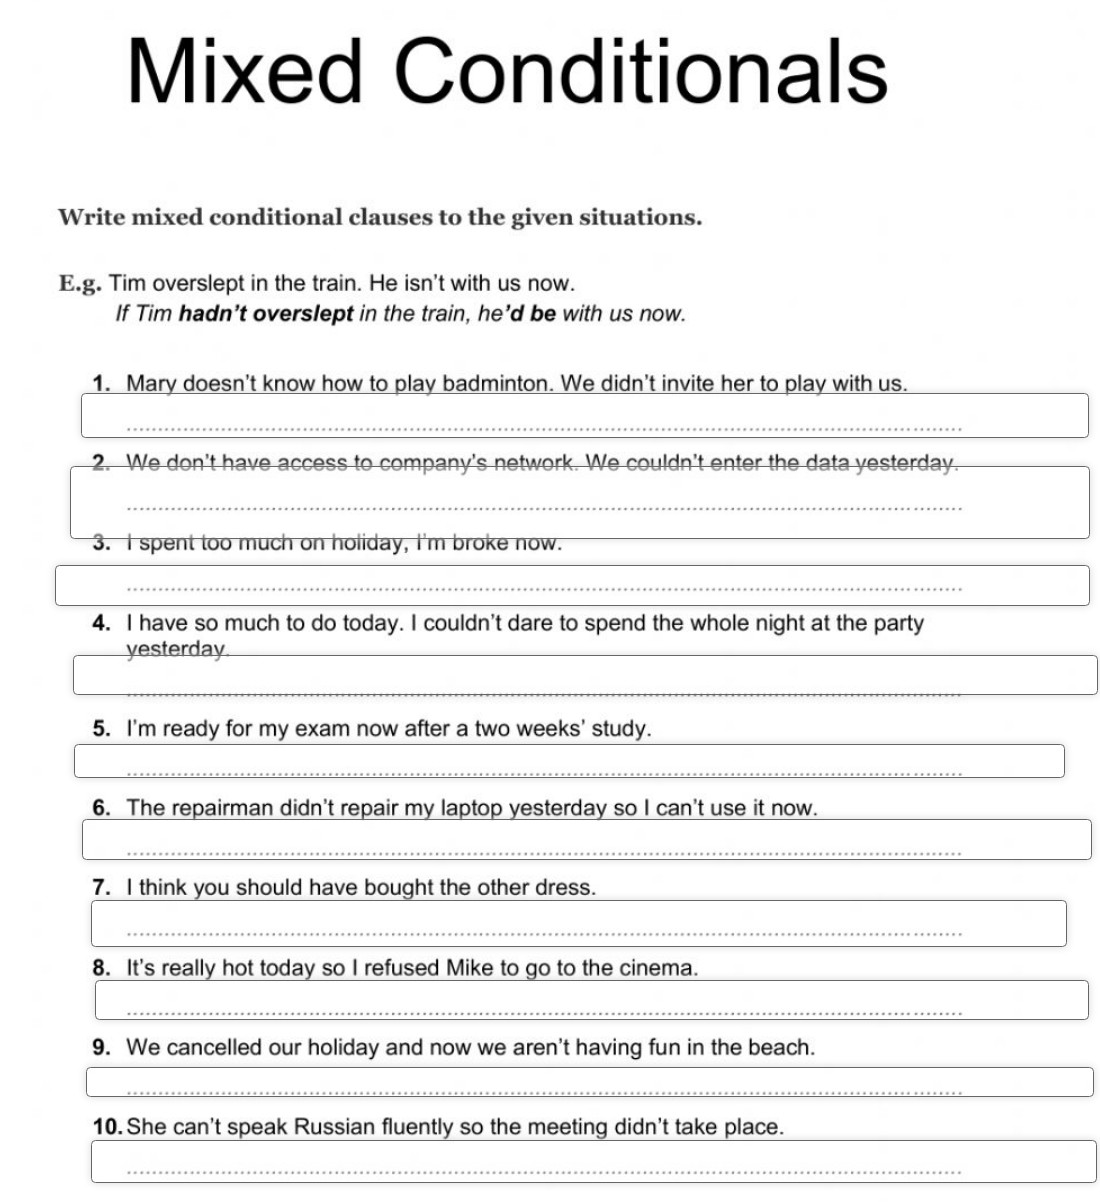 Conditionals activities. Mixed conditionals. Mixed conditionals упражнения. Conditionals Mixed conditionals. Mixed conditionals в английском.